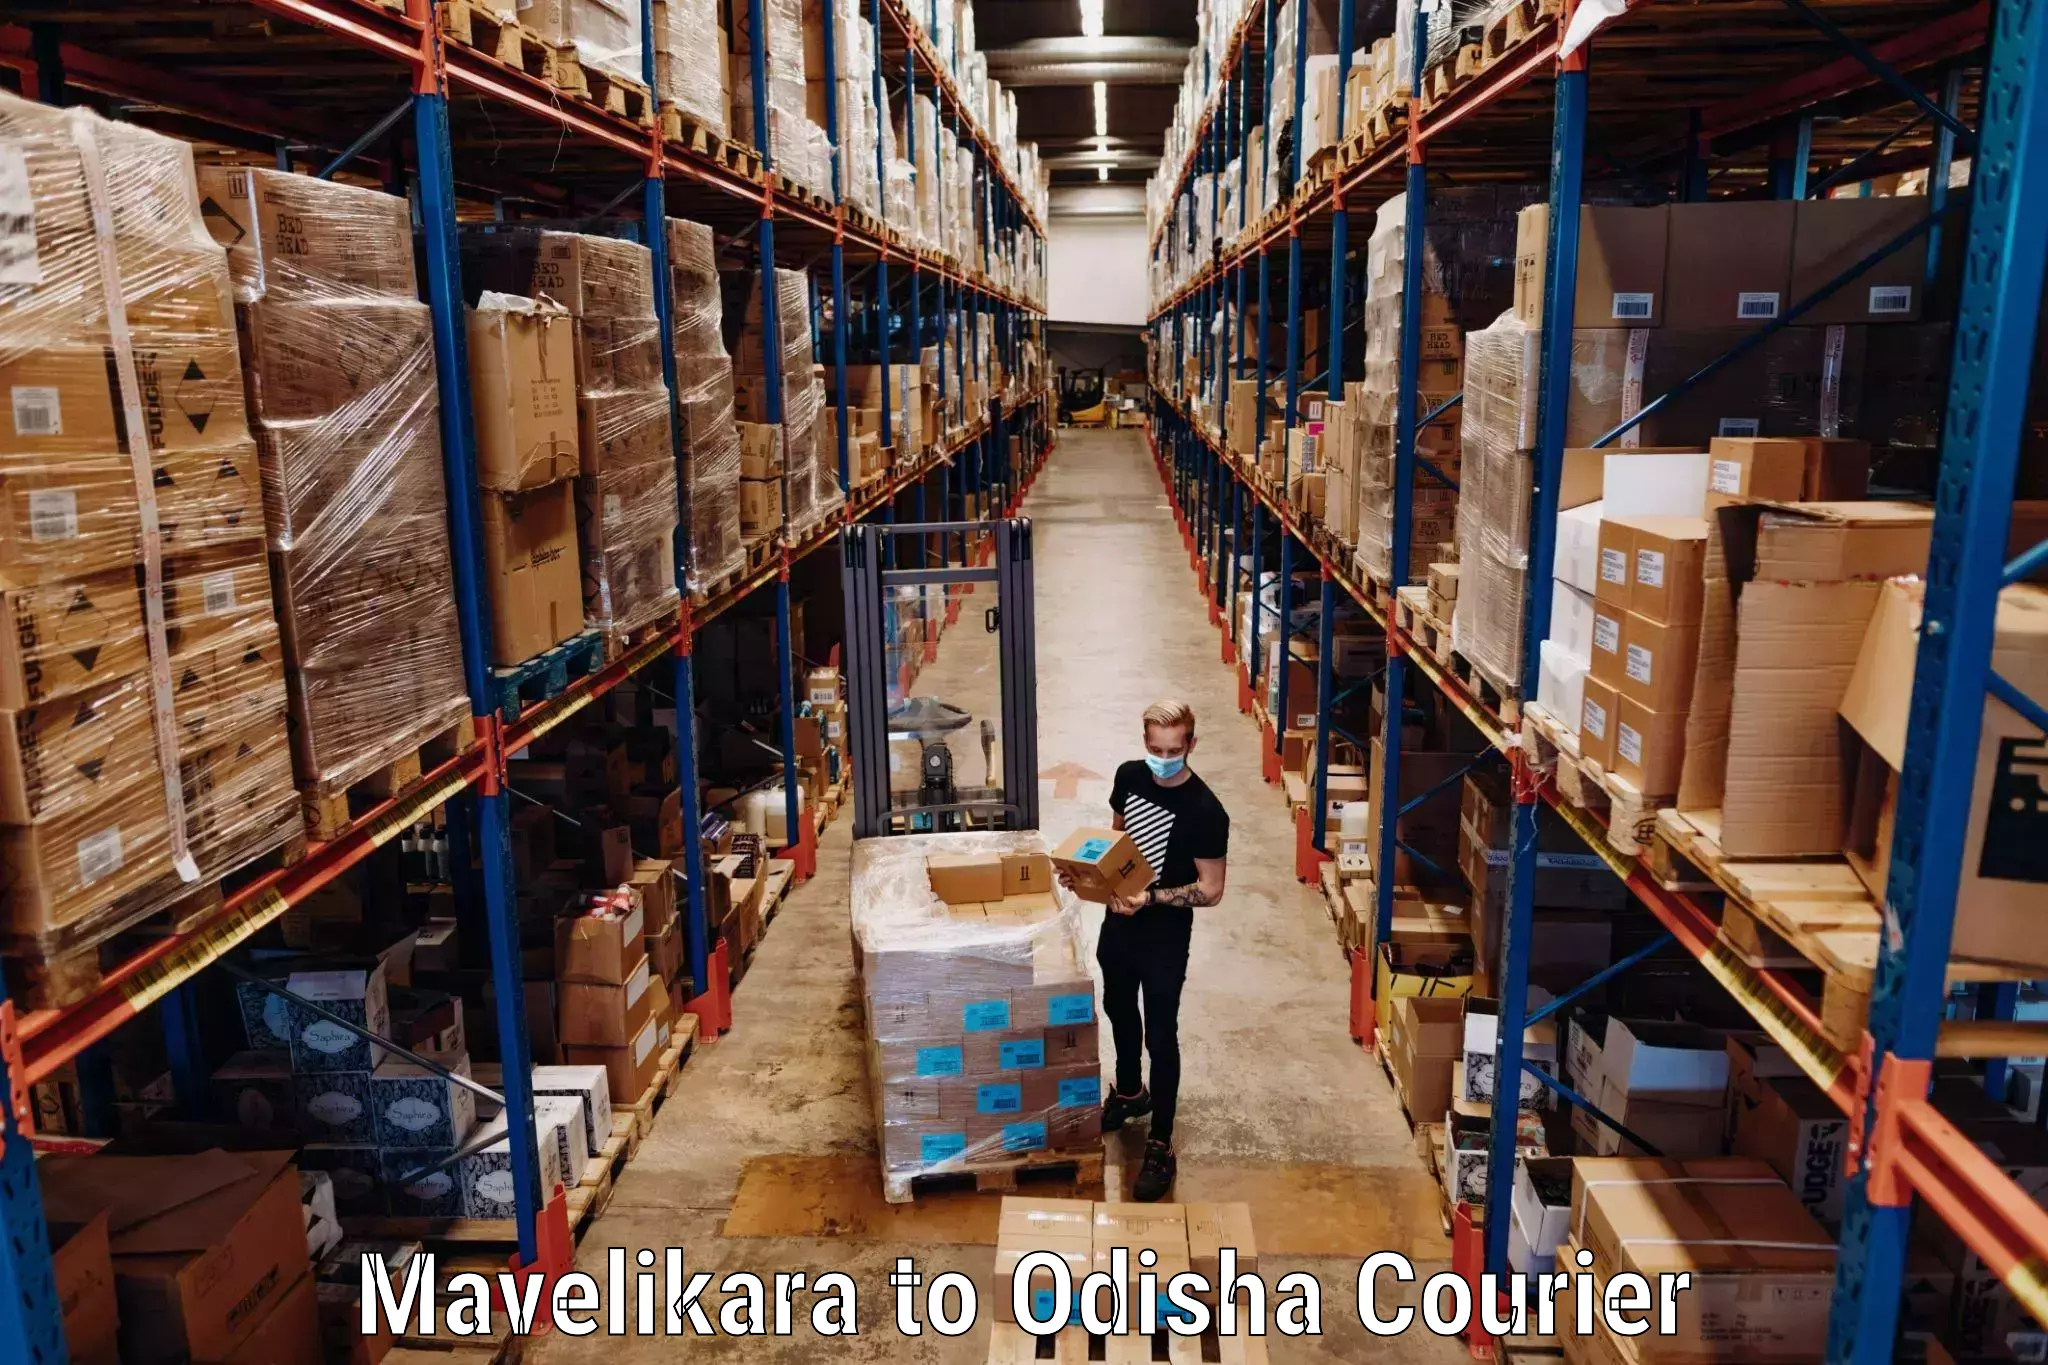 Luggage transport consulting Mavelikara to Odisha